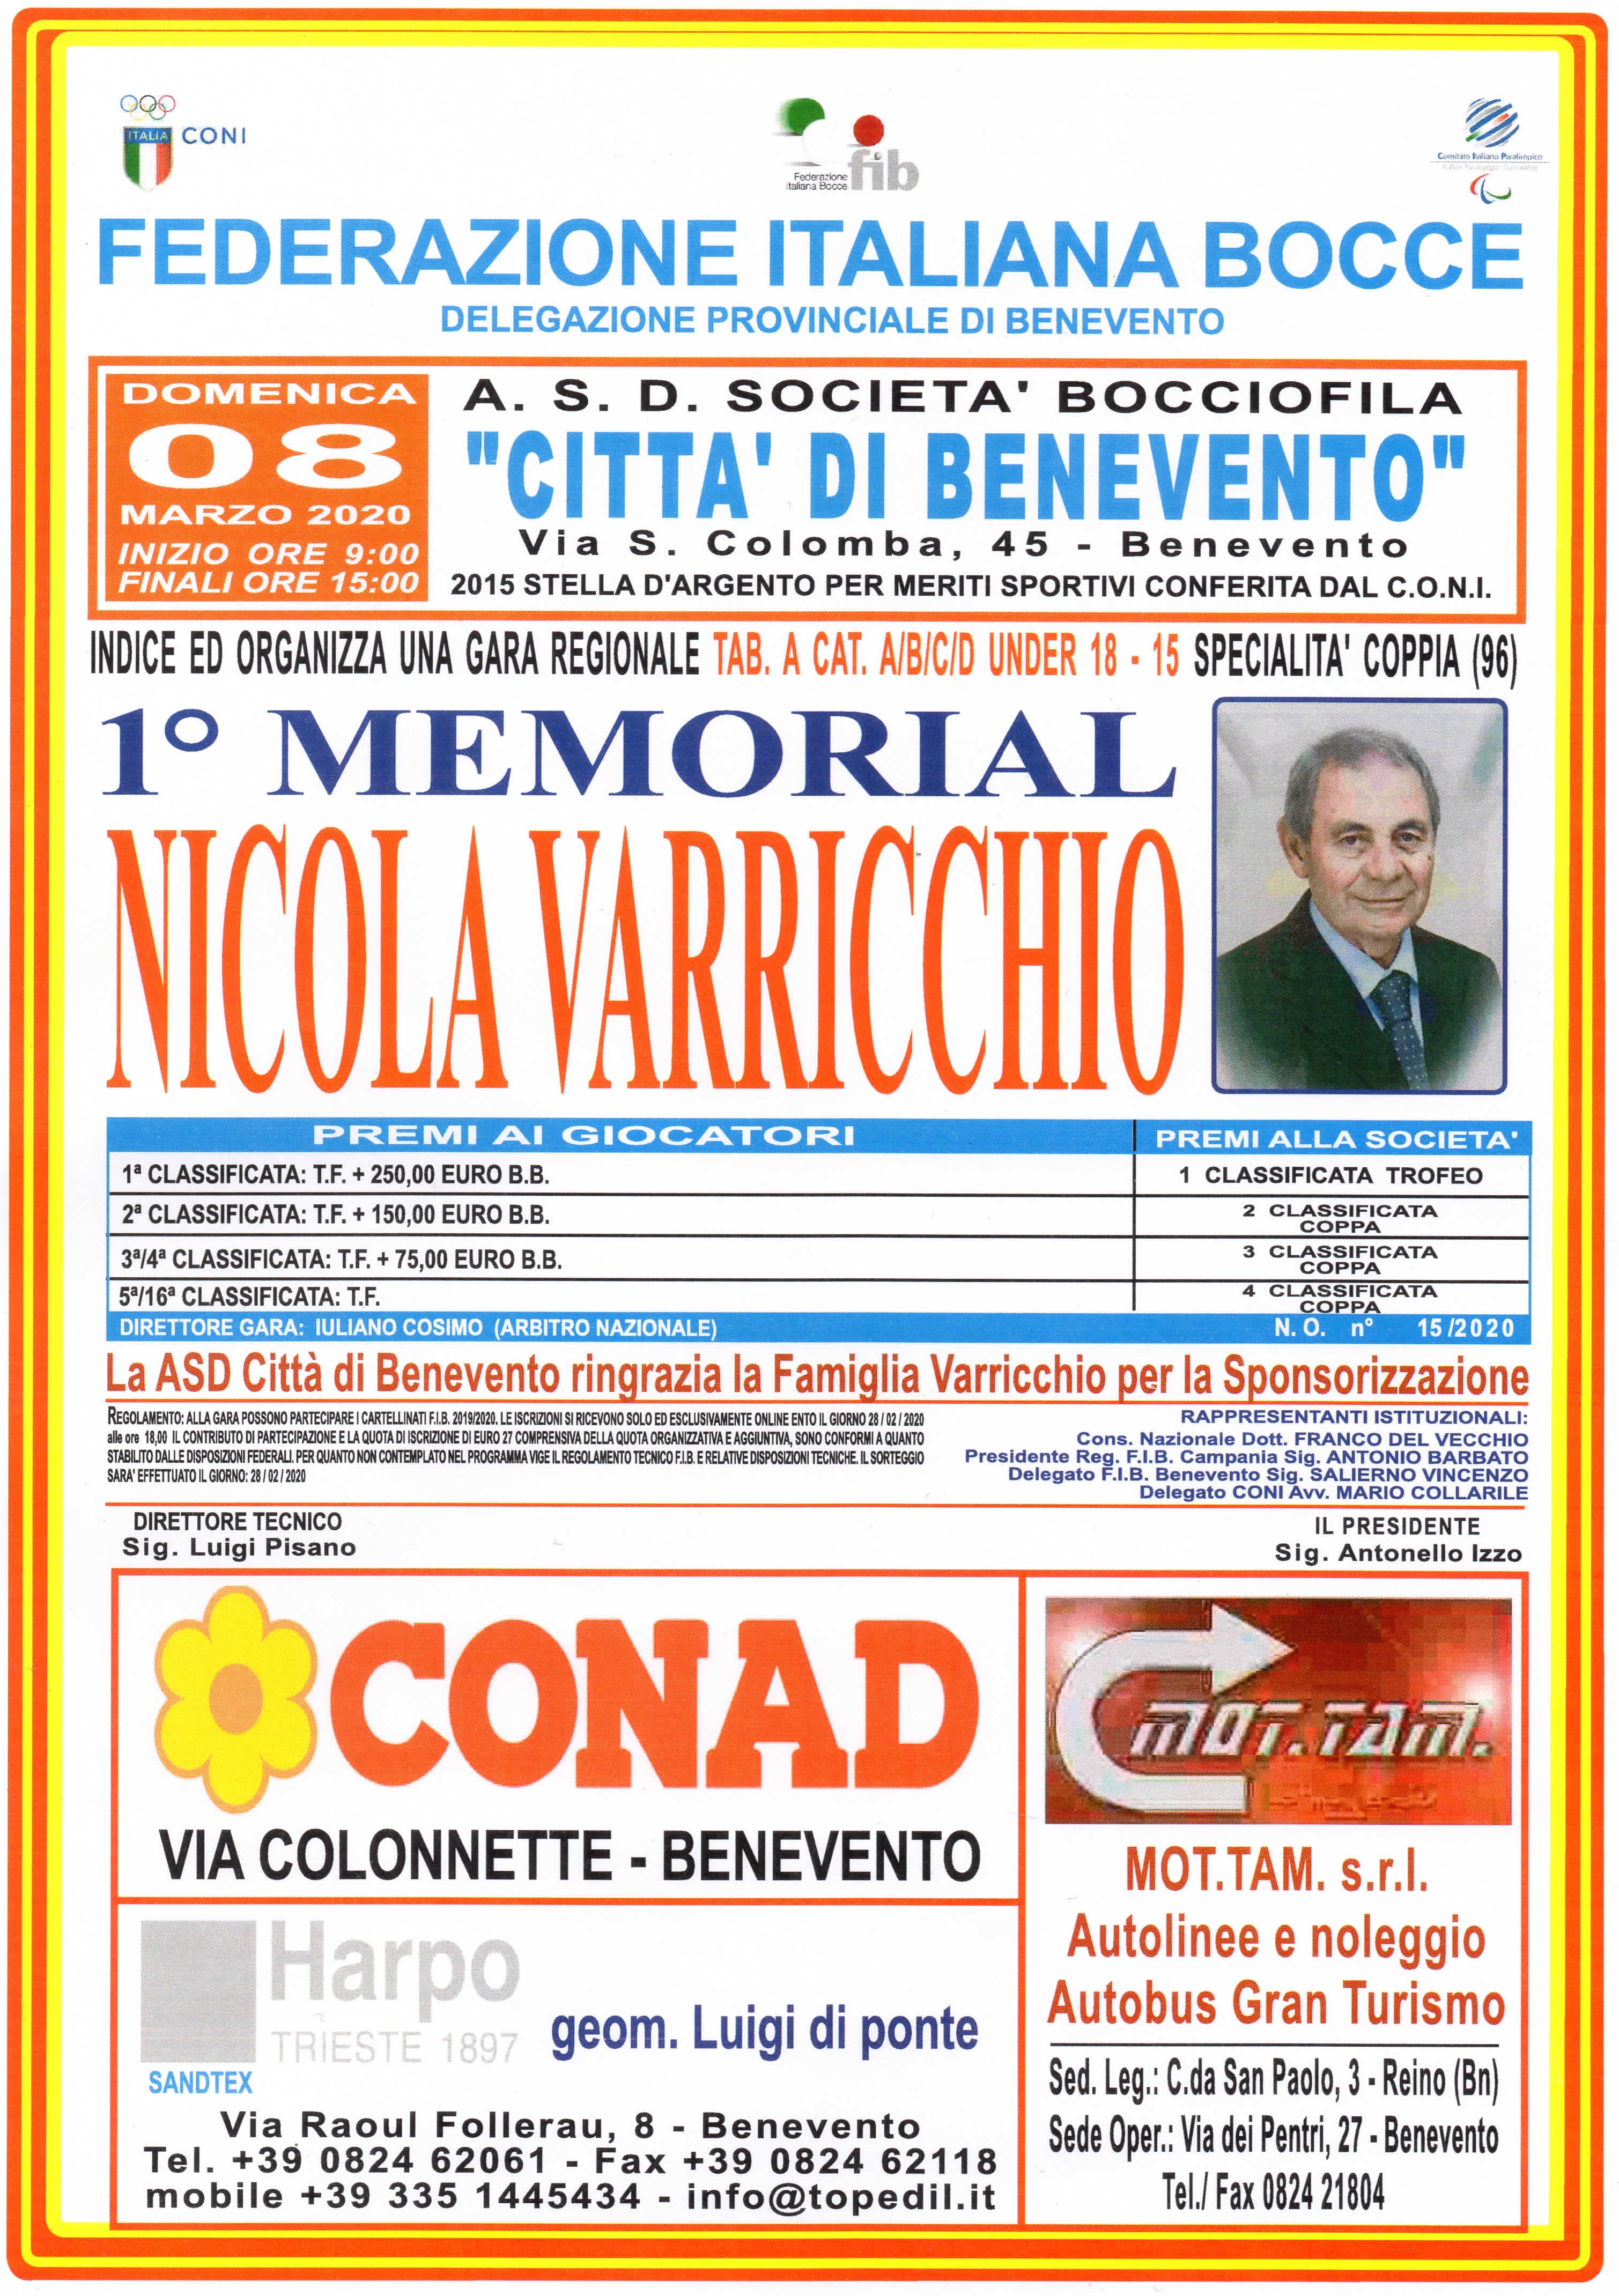 1 MEMORIAL NICOLA VARRICCHIO